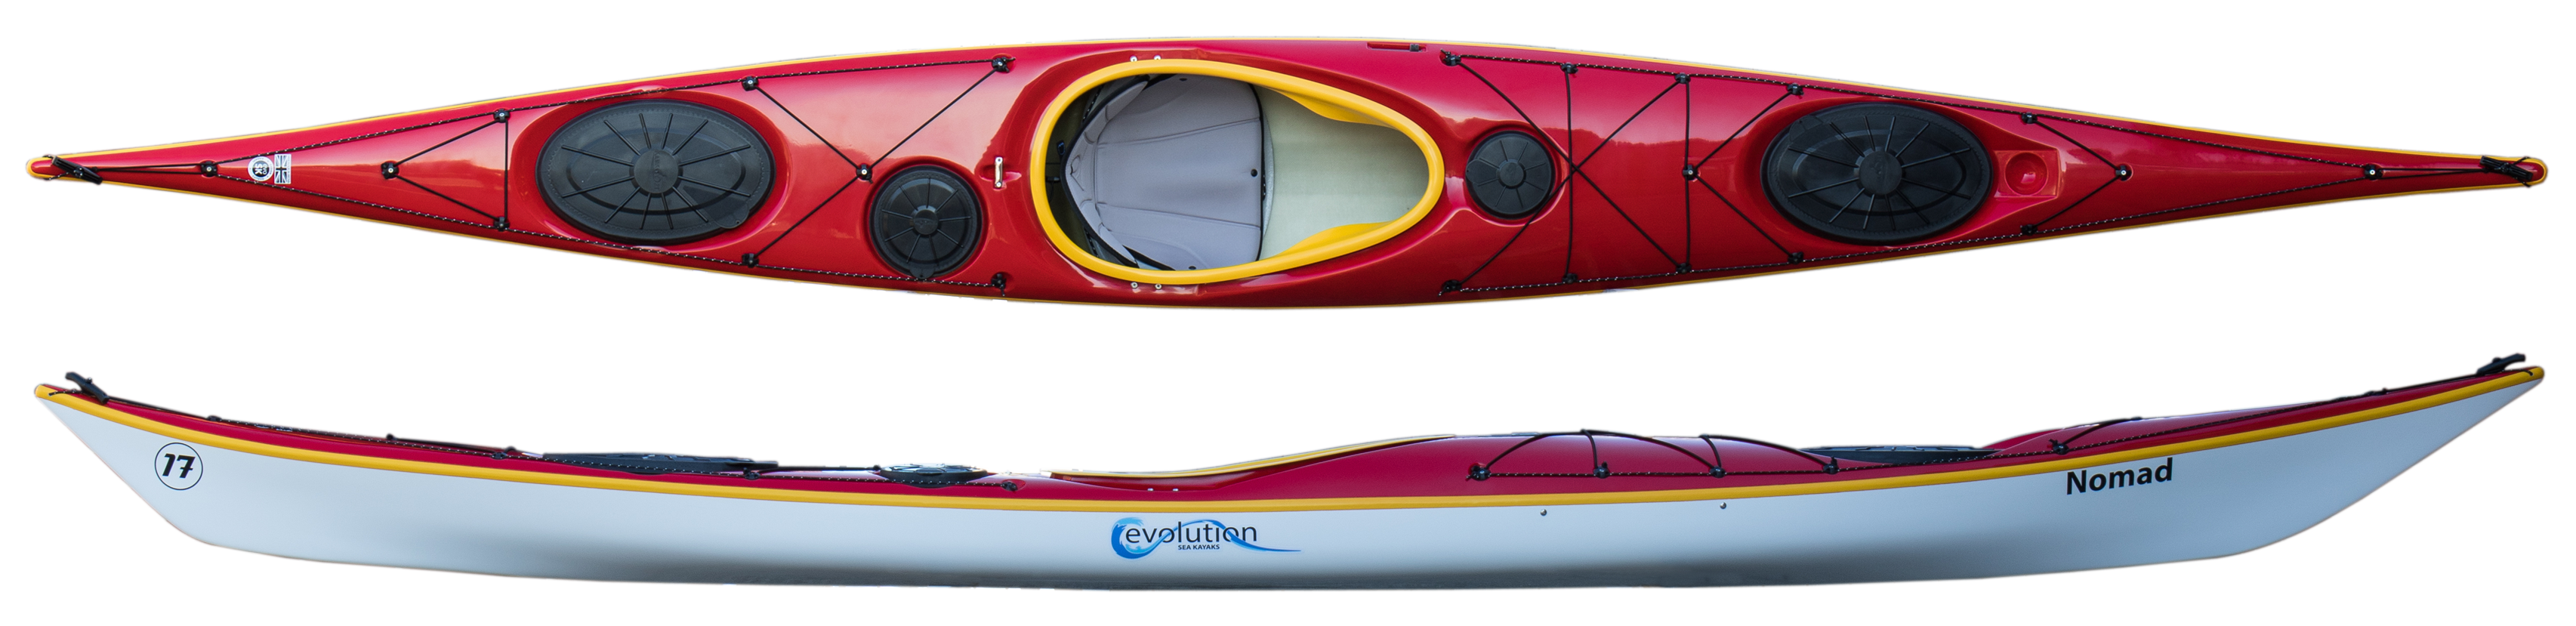 Kayaking clipart red kayak. Evolution sea kayaks nomad